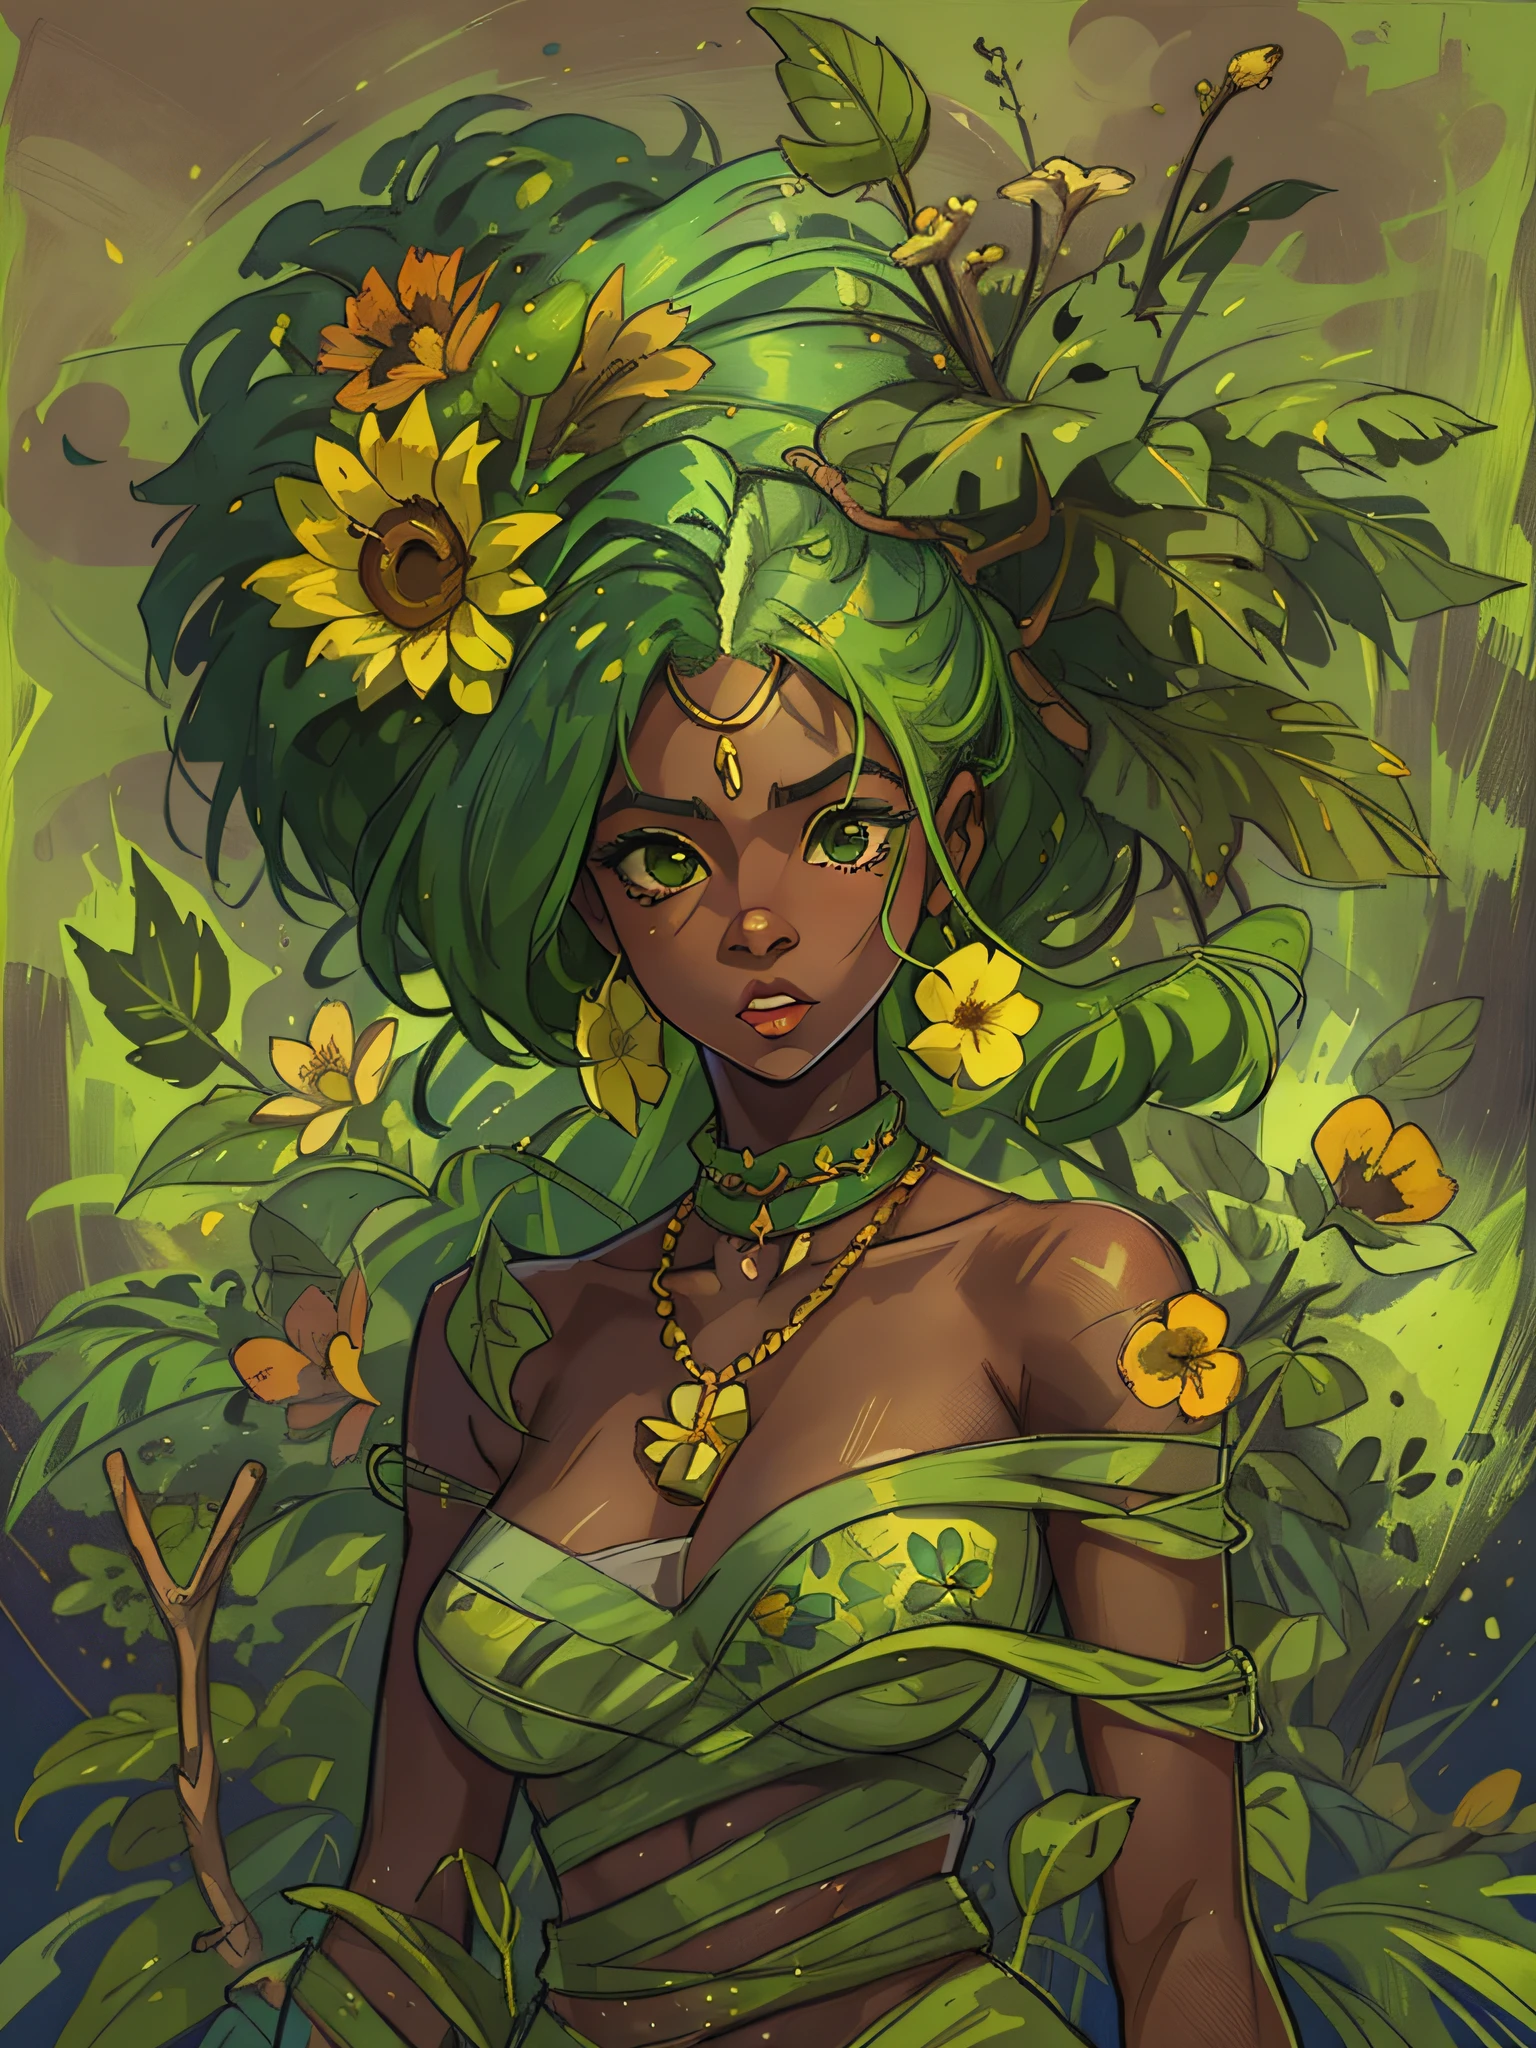 阿玛利亚, 一個年輕的黑人婦女, 綠髮, 散發出力量和韌性的光環. 裝飾著植物和花卉編織的衣服, 她的服裝頌揚自然之美，同時展示她與地球的聯繫.